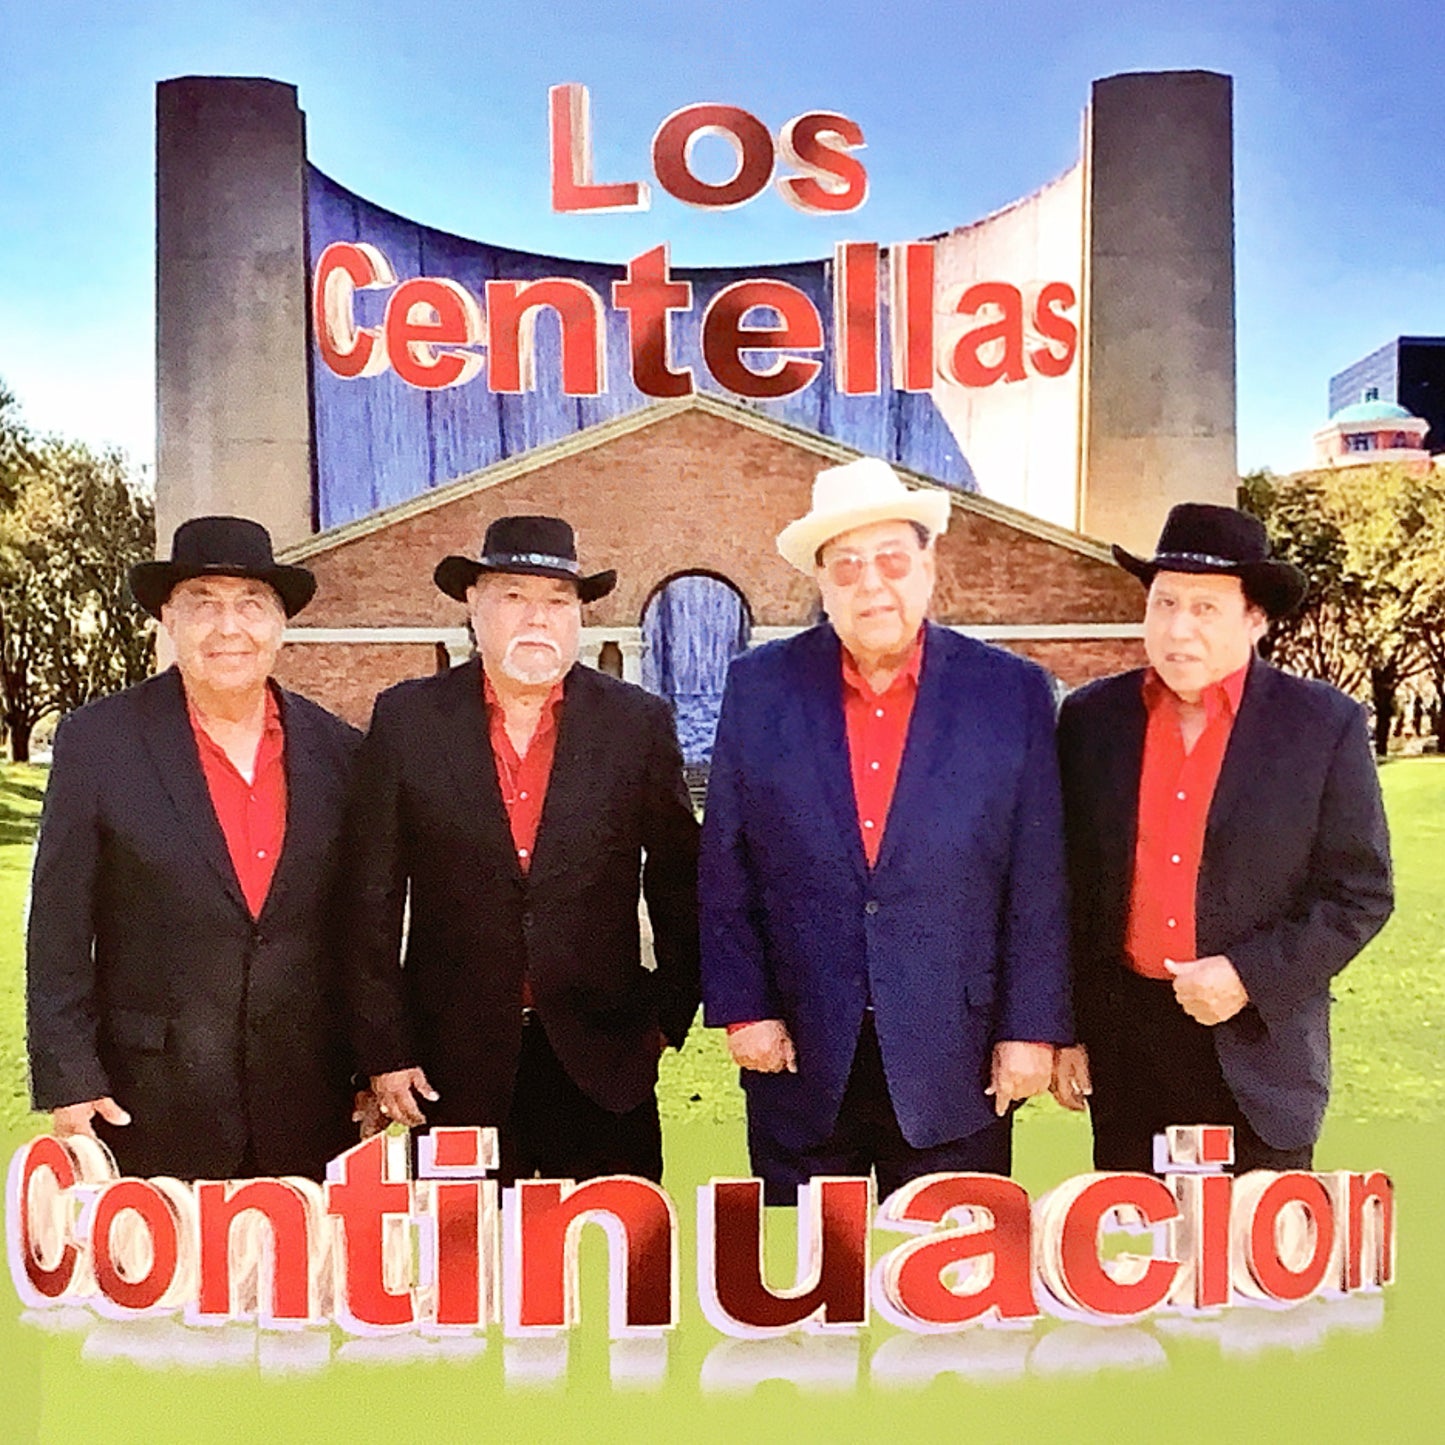 Los Centellas - Continuacion (CD)